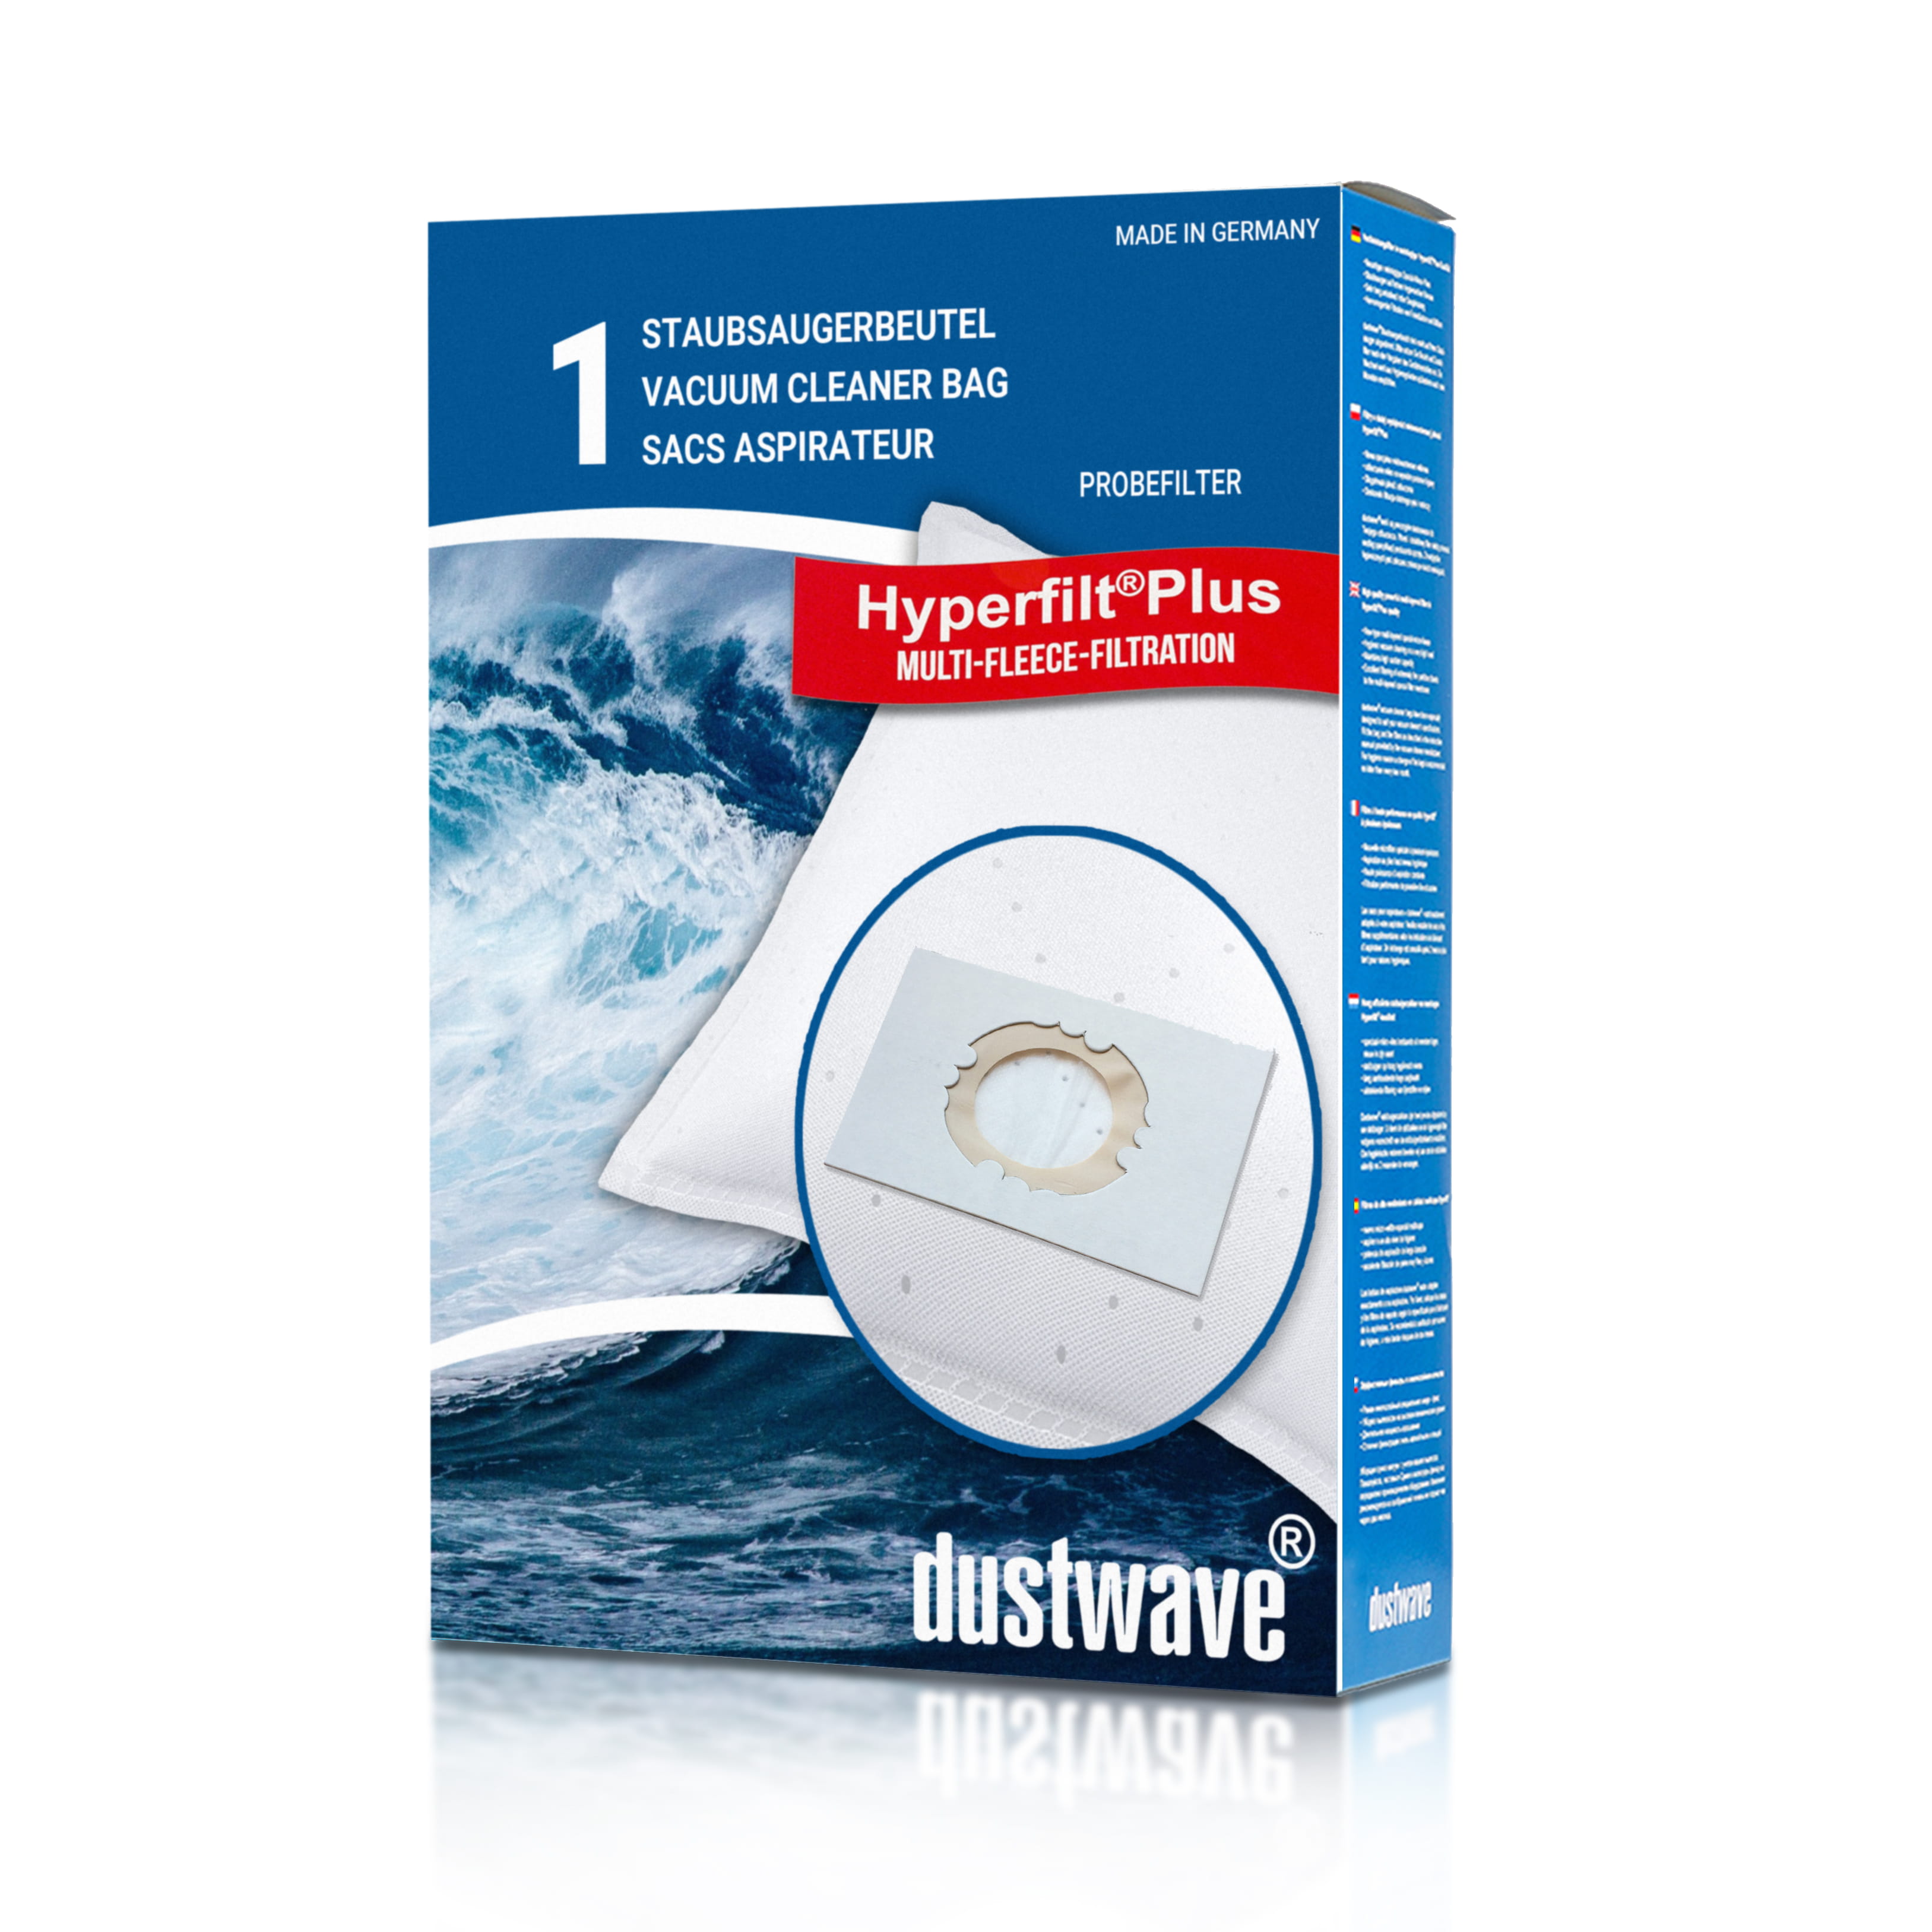 Dustwave® 1 Staubsaugerbeutel für AEG Multi 500 - hocheffizient, mehrlagiges Mikrovlies mit Hygieneverschluss - Made in Germany